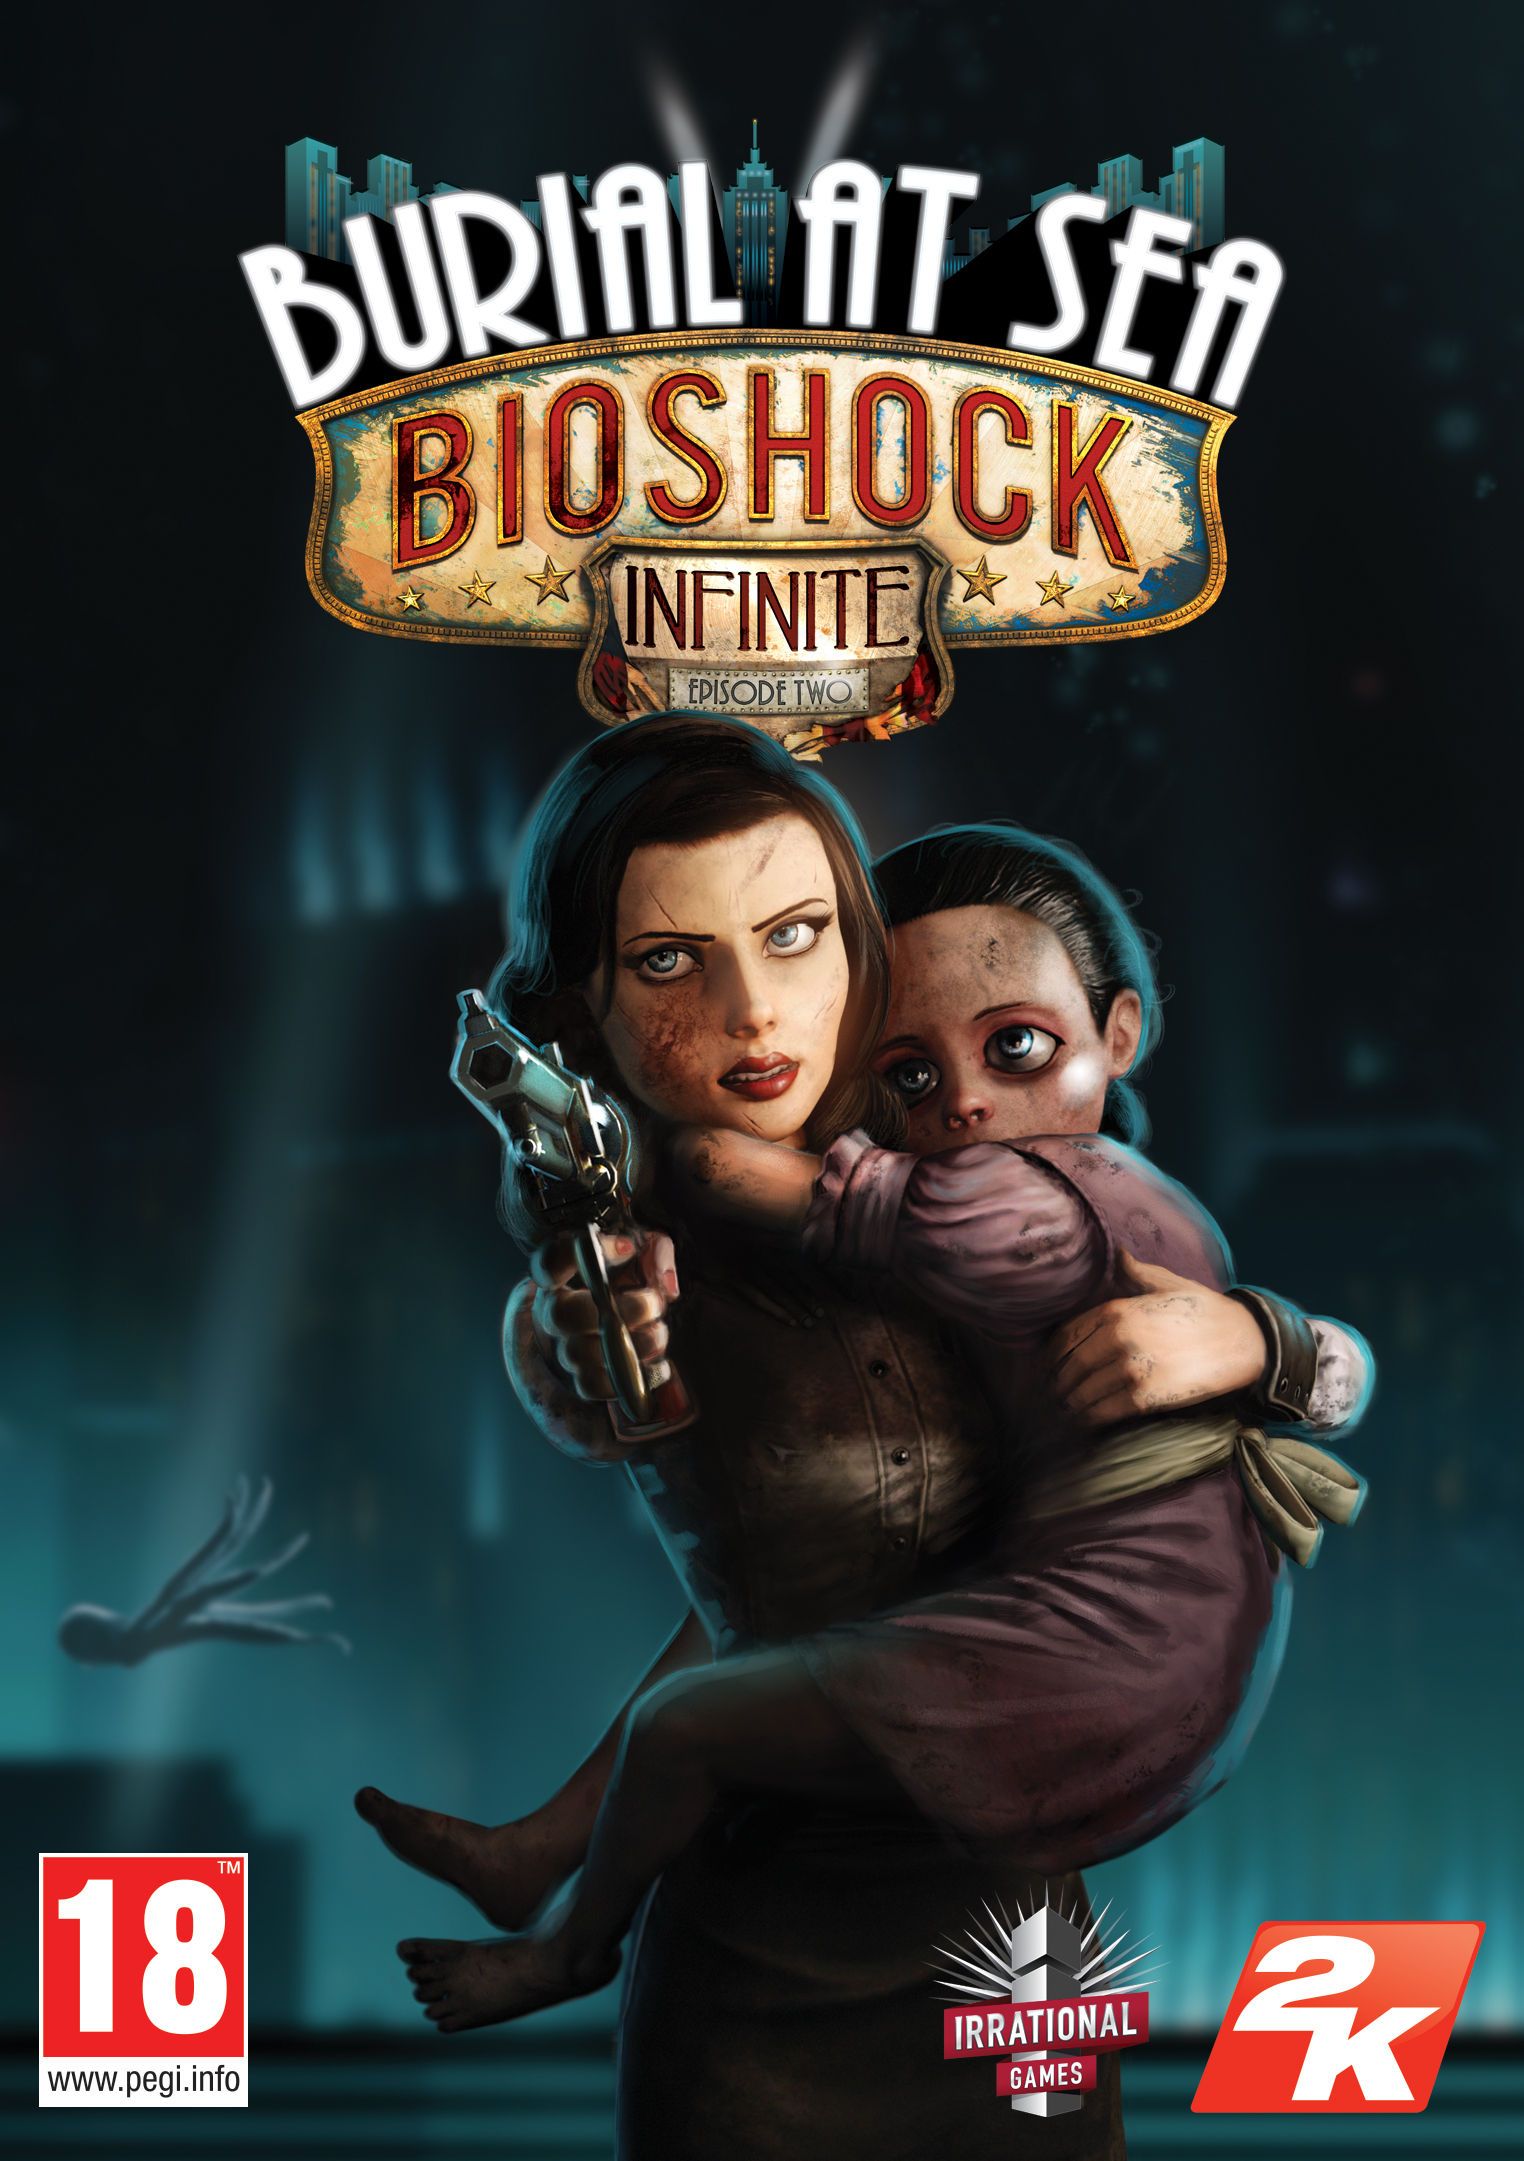 BioShock Infinite Ending Explained